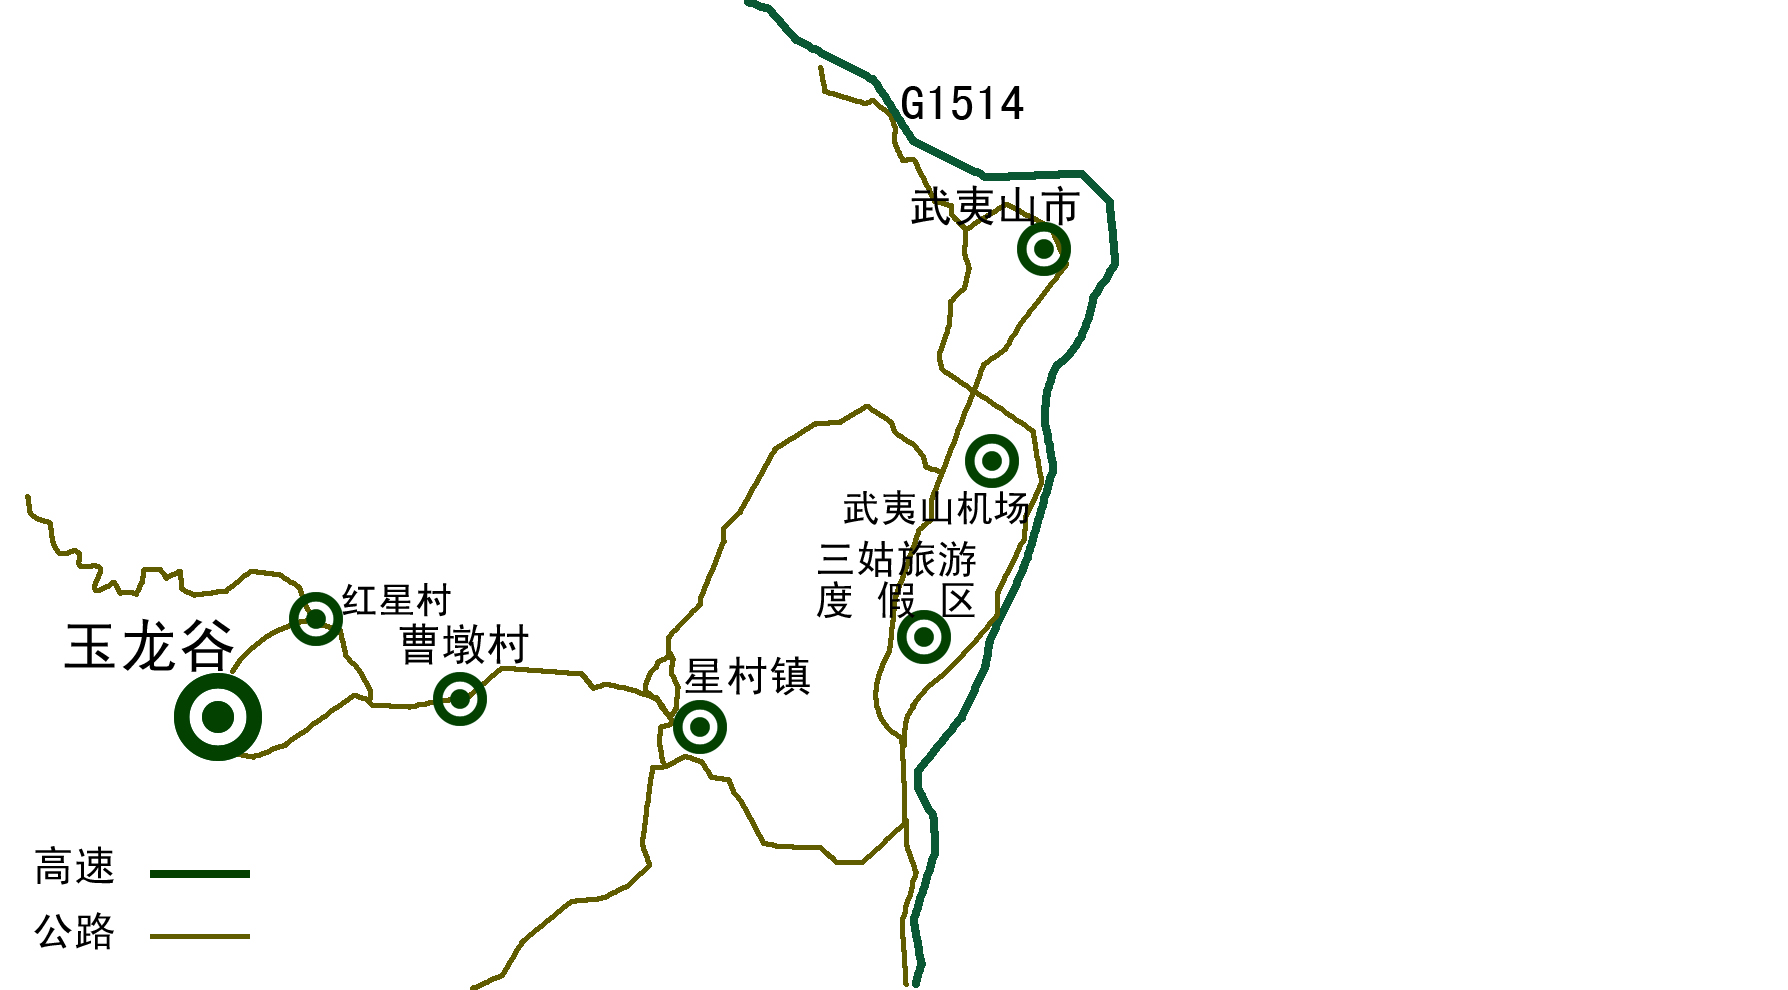 武夷山玉龙谷交通路线图